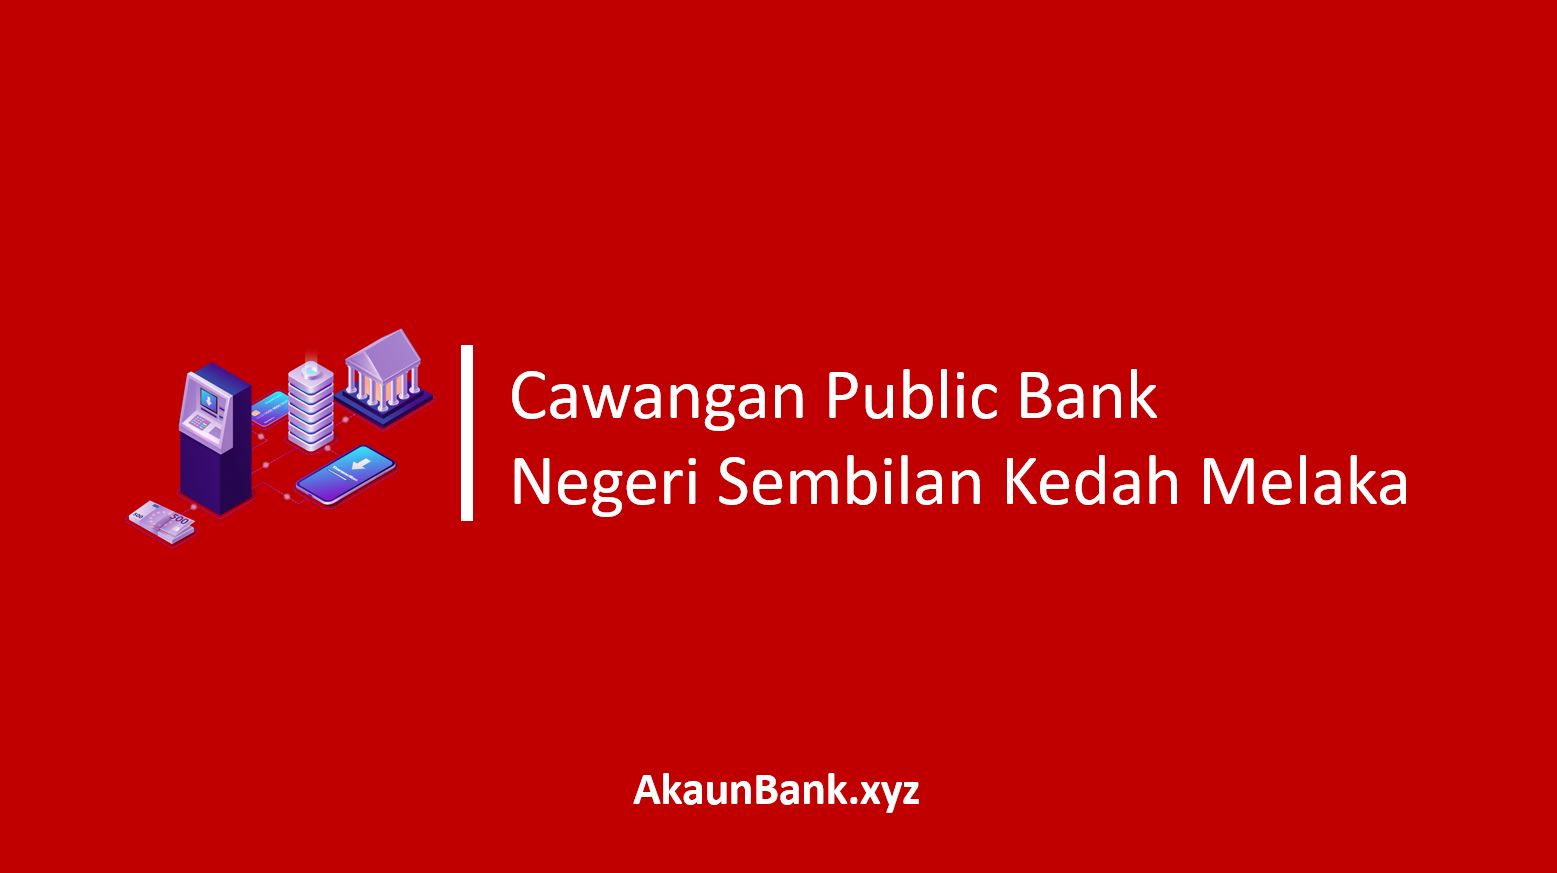 Cawangan Public Bank Negeri Sembilan Kedah Melaka